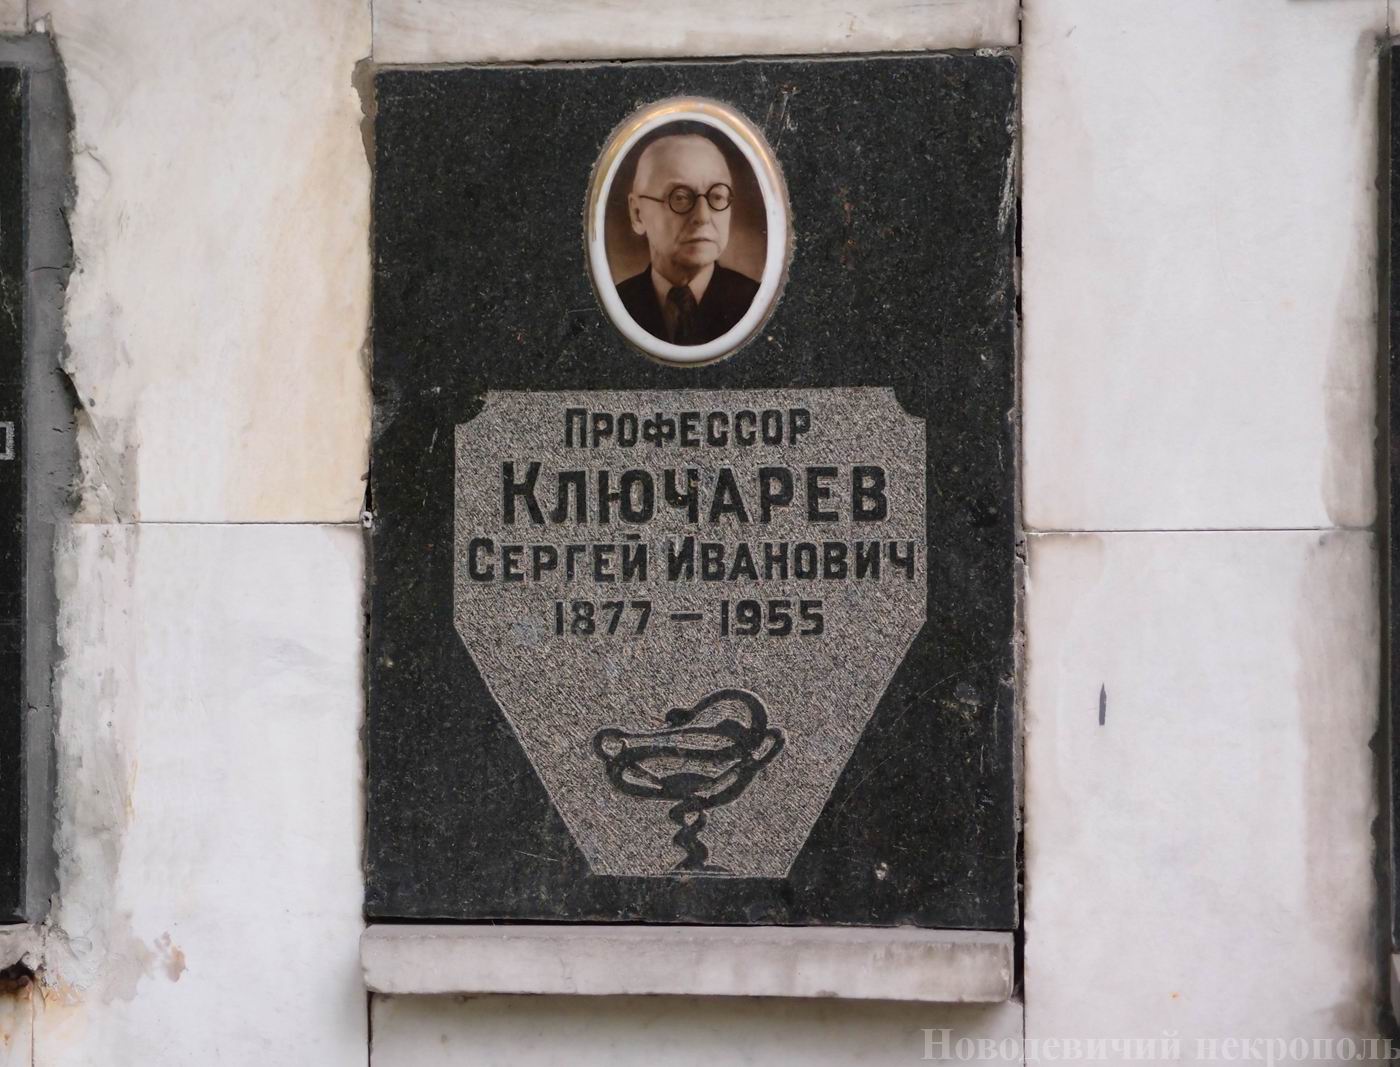 Плита на нише Ключарева С.И. (1877-1955), на Новодевичьем кладбище (колумбарий [109]-4-2).